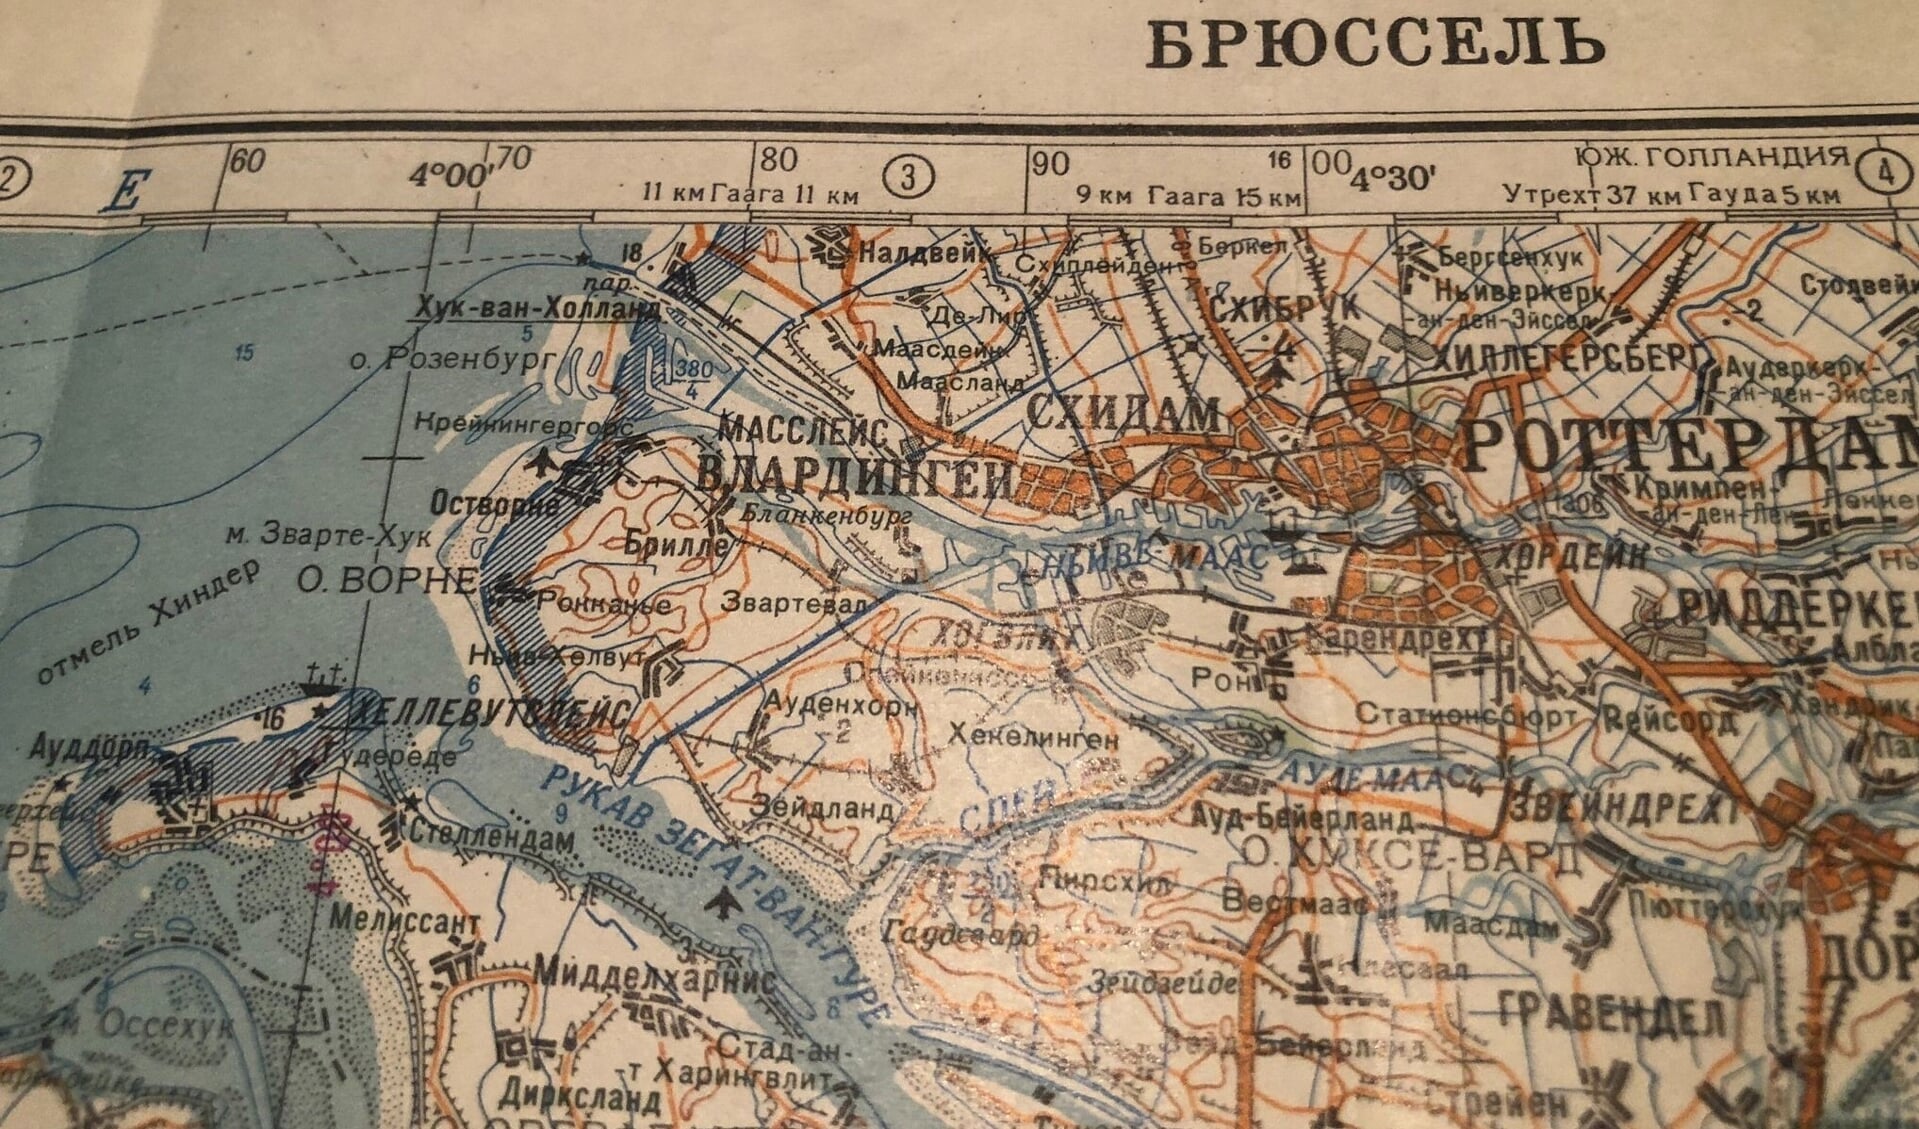 De meest recente tentoongestelde kaart is een Russische militaire stafkaart uit de jaren ‘80 (ca. 1980).